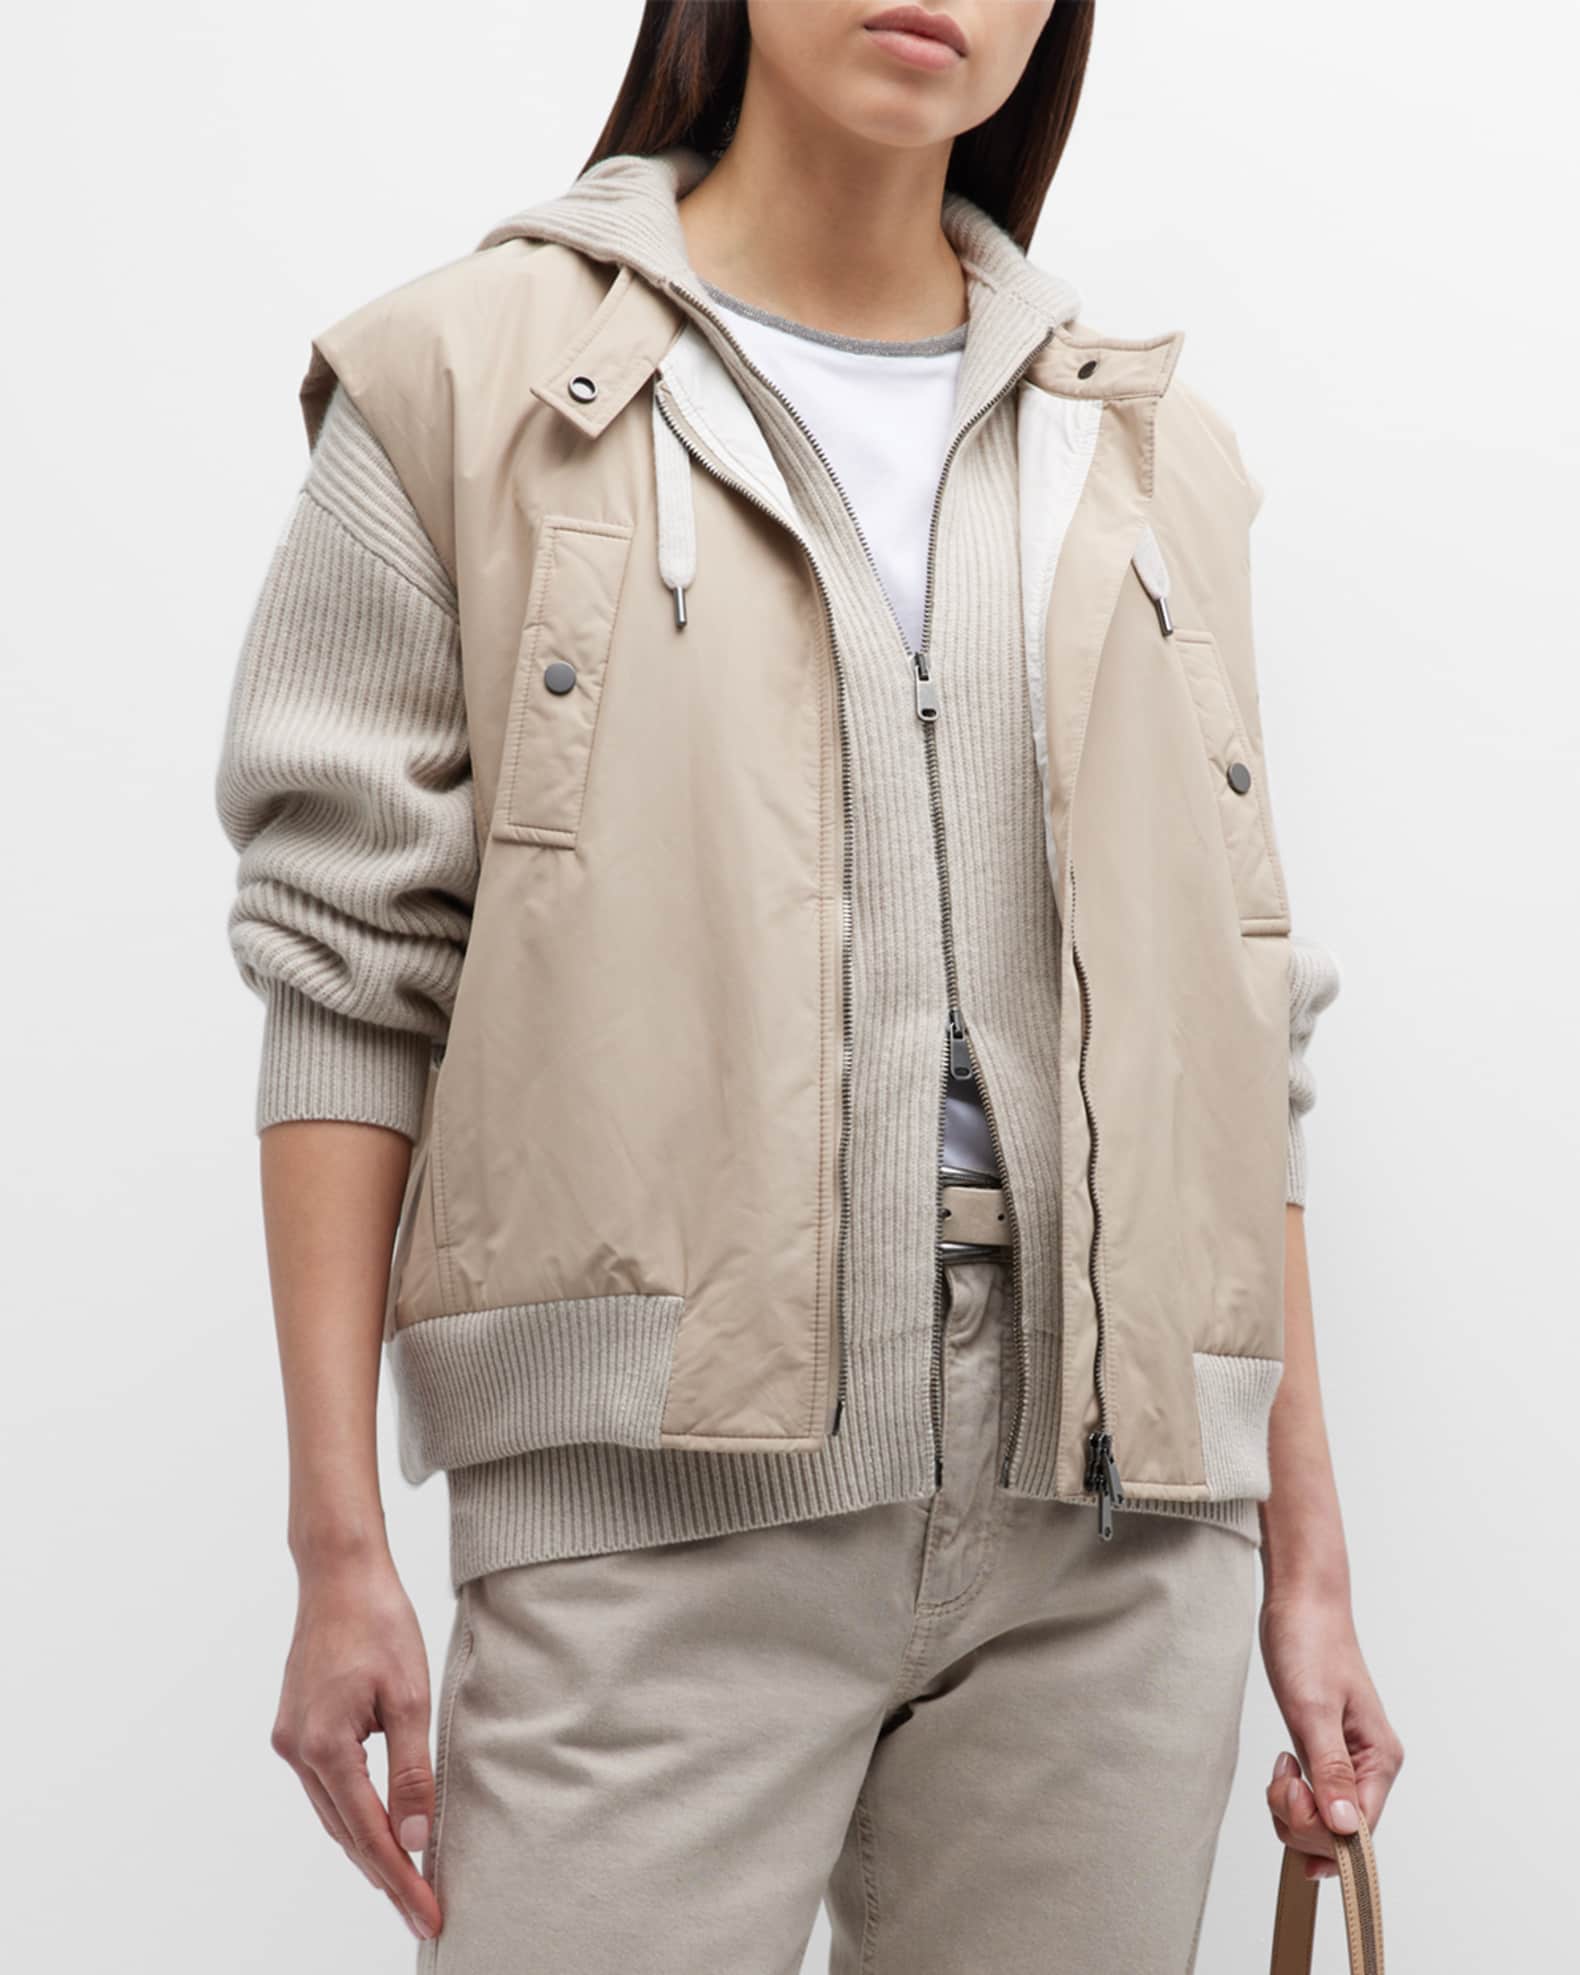 Louis Vuitton Grey Cashmere & Cotton Hooded Zip Front Jacket L